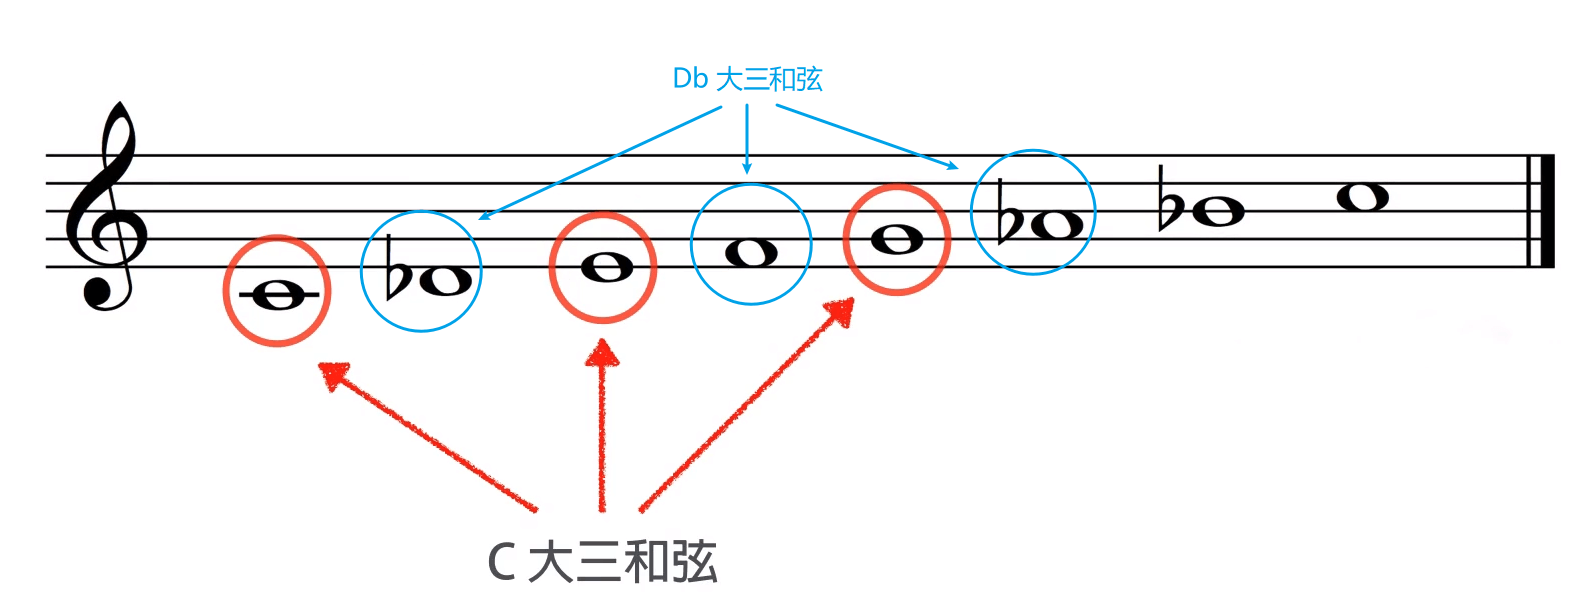 Phrygian Dominant 组成的两个大三和弦